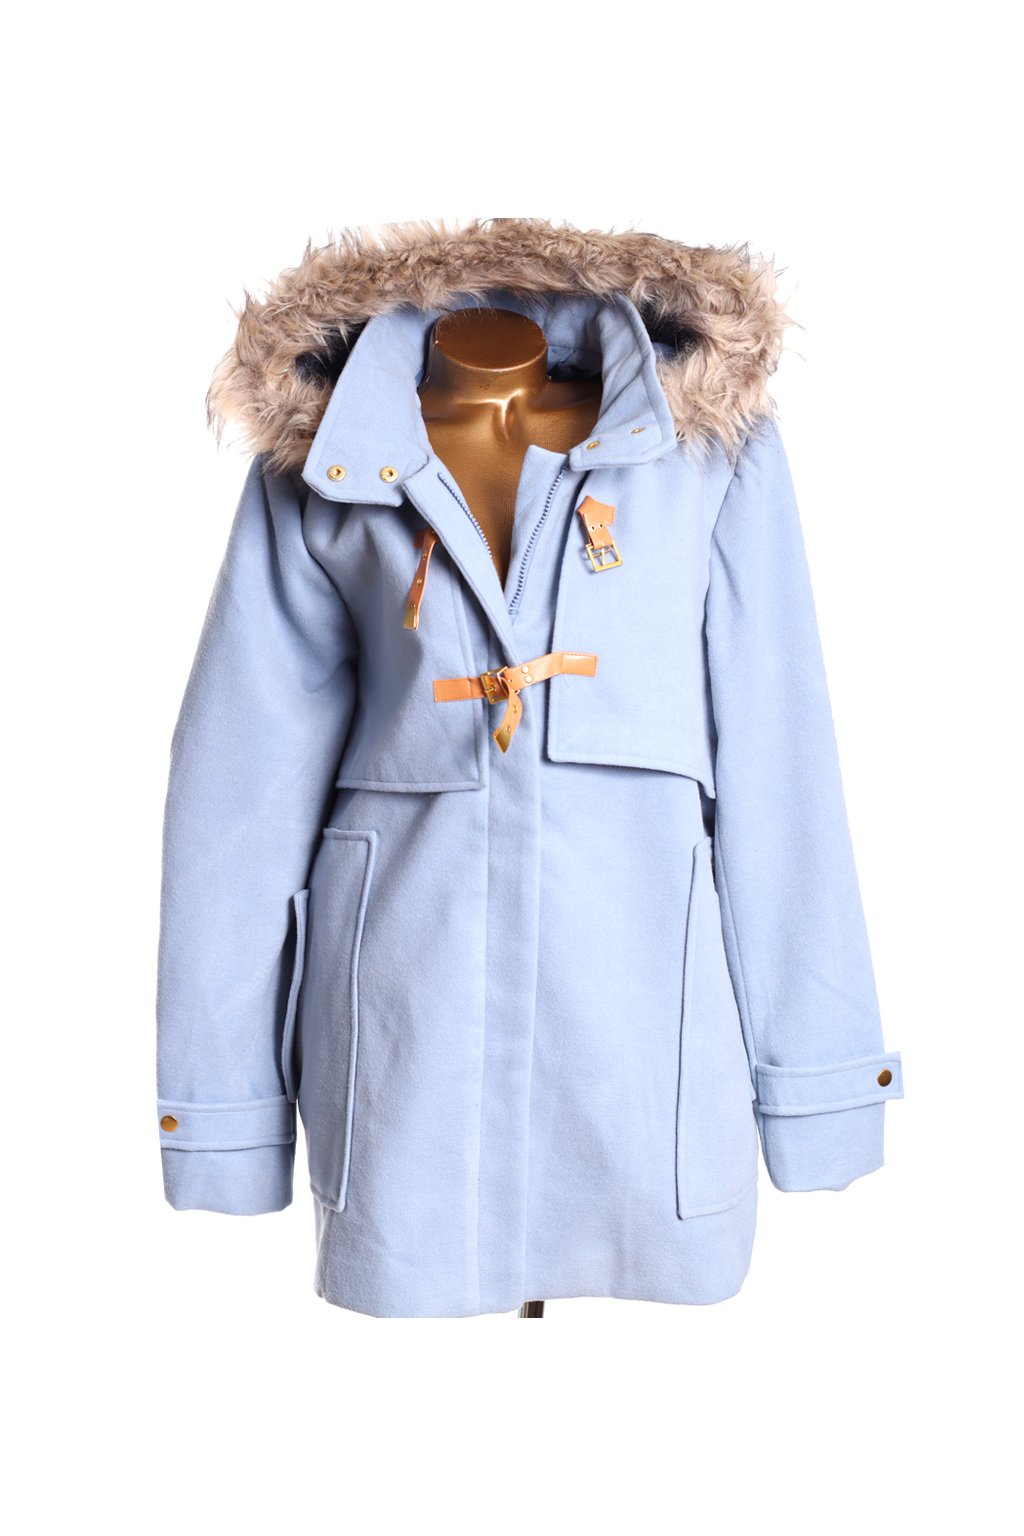 Dámský modrý kabát s kapucí s kožešinou / B.YOU  / XXXXL (52/54) / ANGLIE